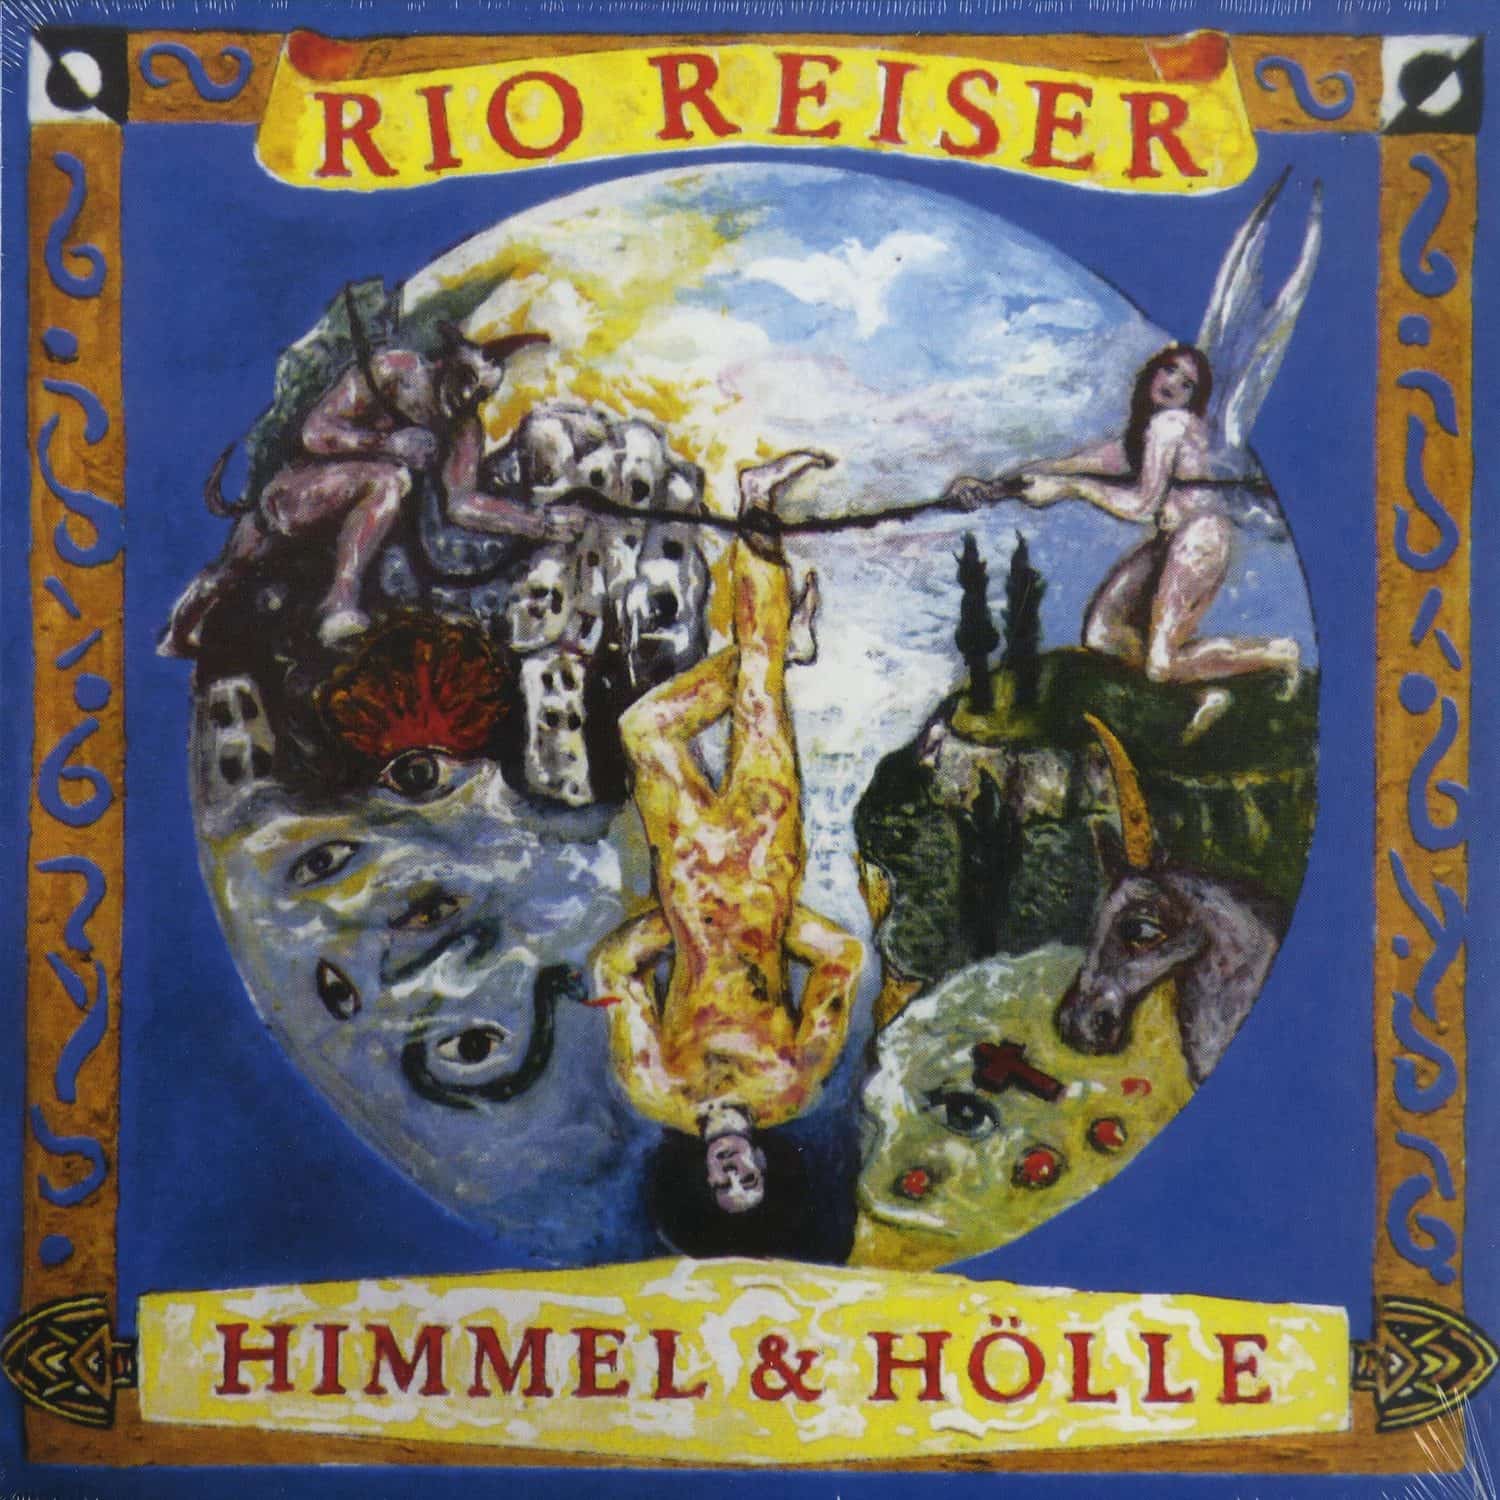 Rio Reiser - HIMMEL & HOELLE 